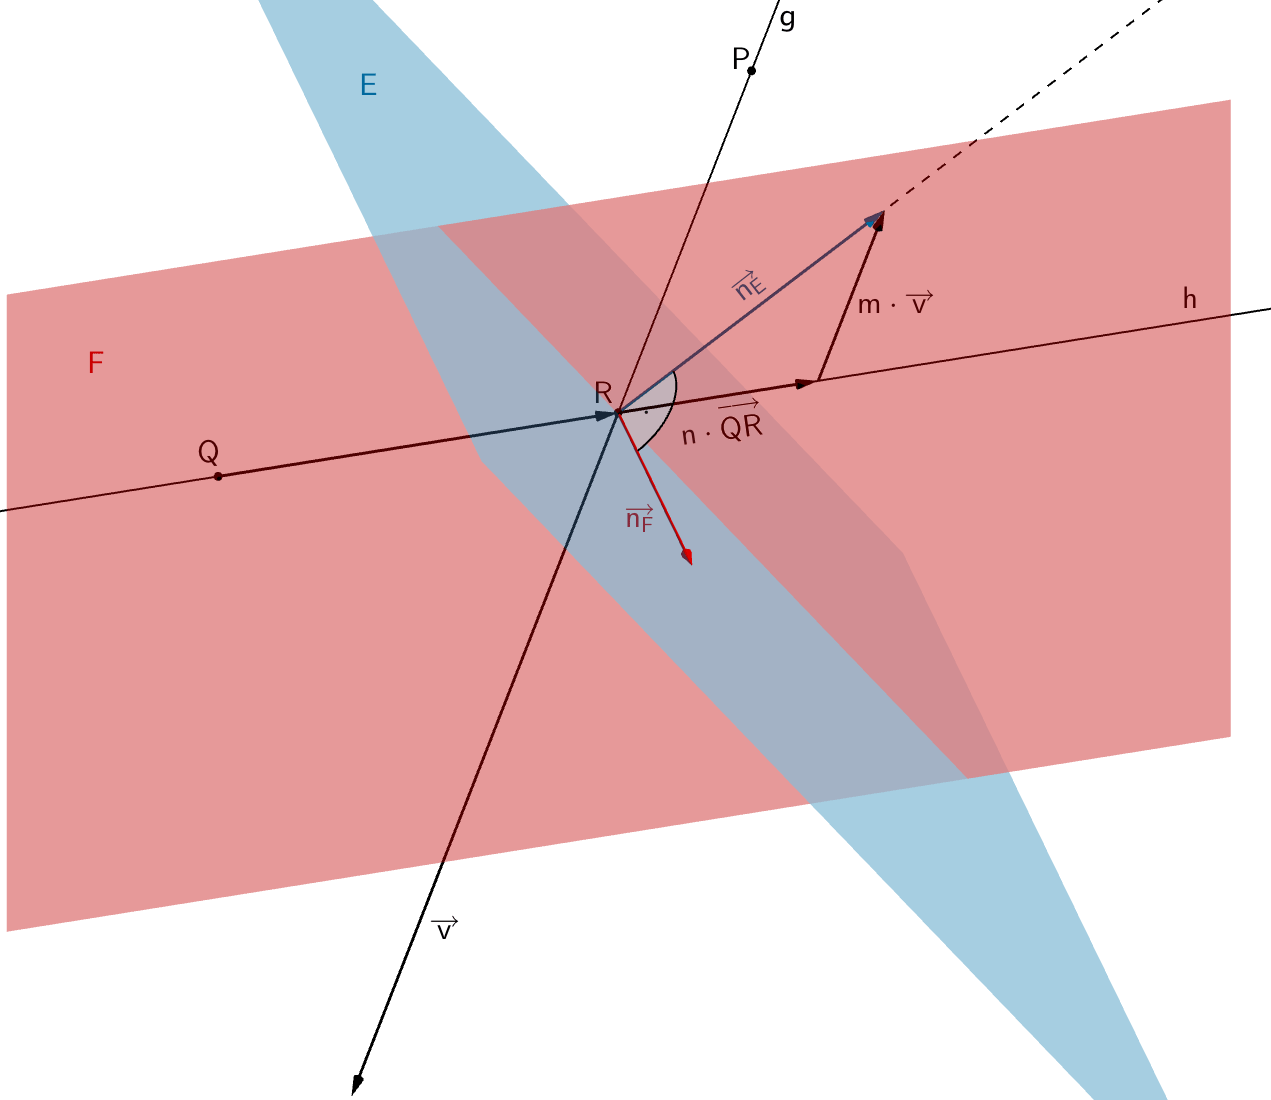 Die Normalenvektoren der Ebene E bzw. F stehen senkrecht zueinander. Der Normalenvektor der Ebene E (Richtungsvektor des Einfallslots) lässt sich als Linearkombination der Richtungsvektoren der Geraden g bzw. h beschreiben.